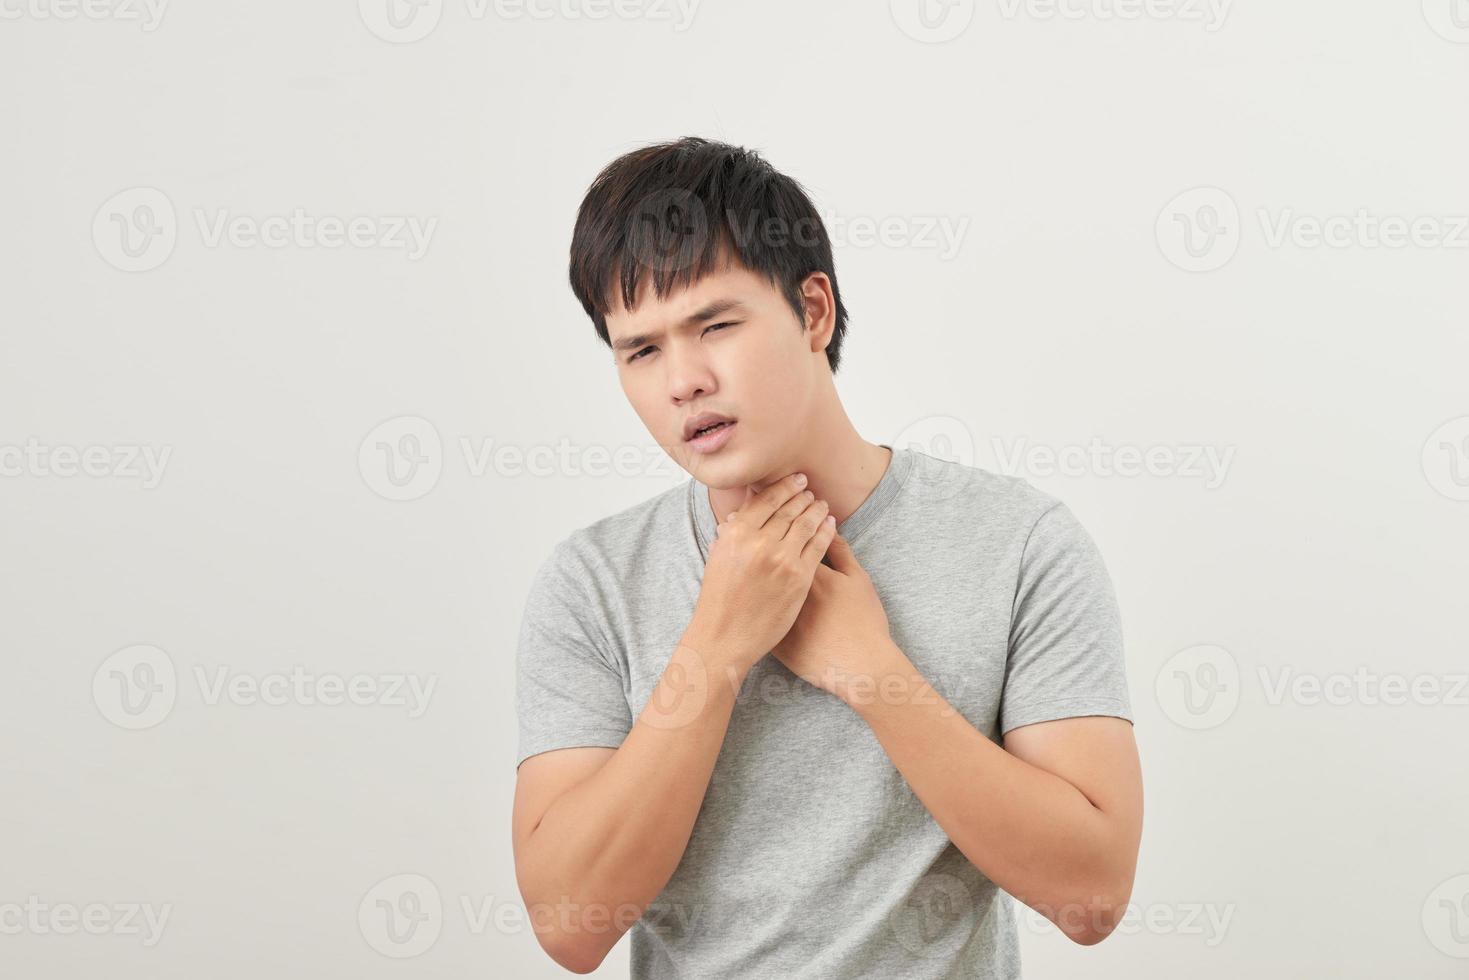 jovem asiático com dor de garganta foto